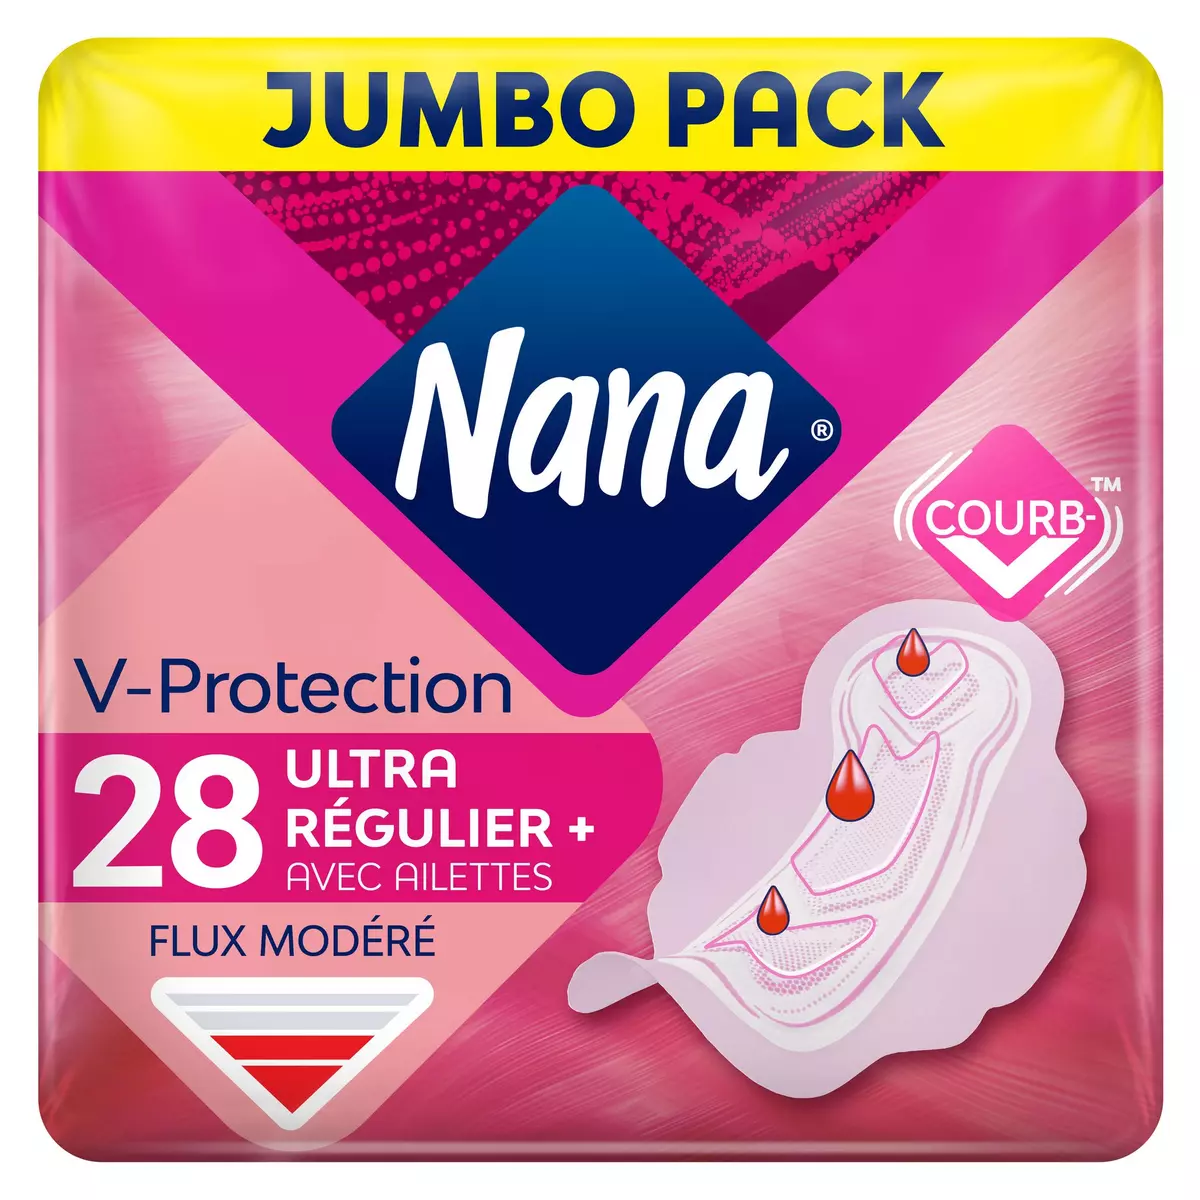 NANA V-Protection Serviettes hygiéniques ultra régulier plus avec ailettes 28 serviettes